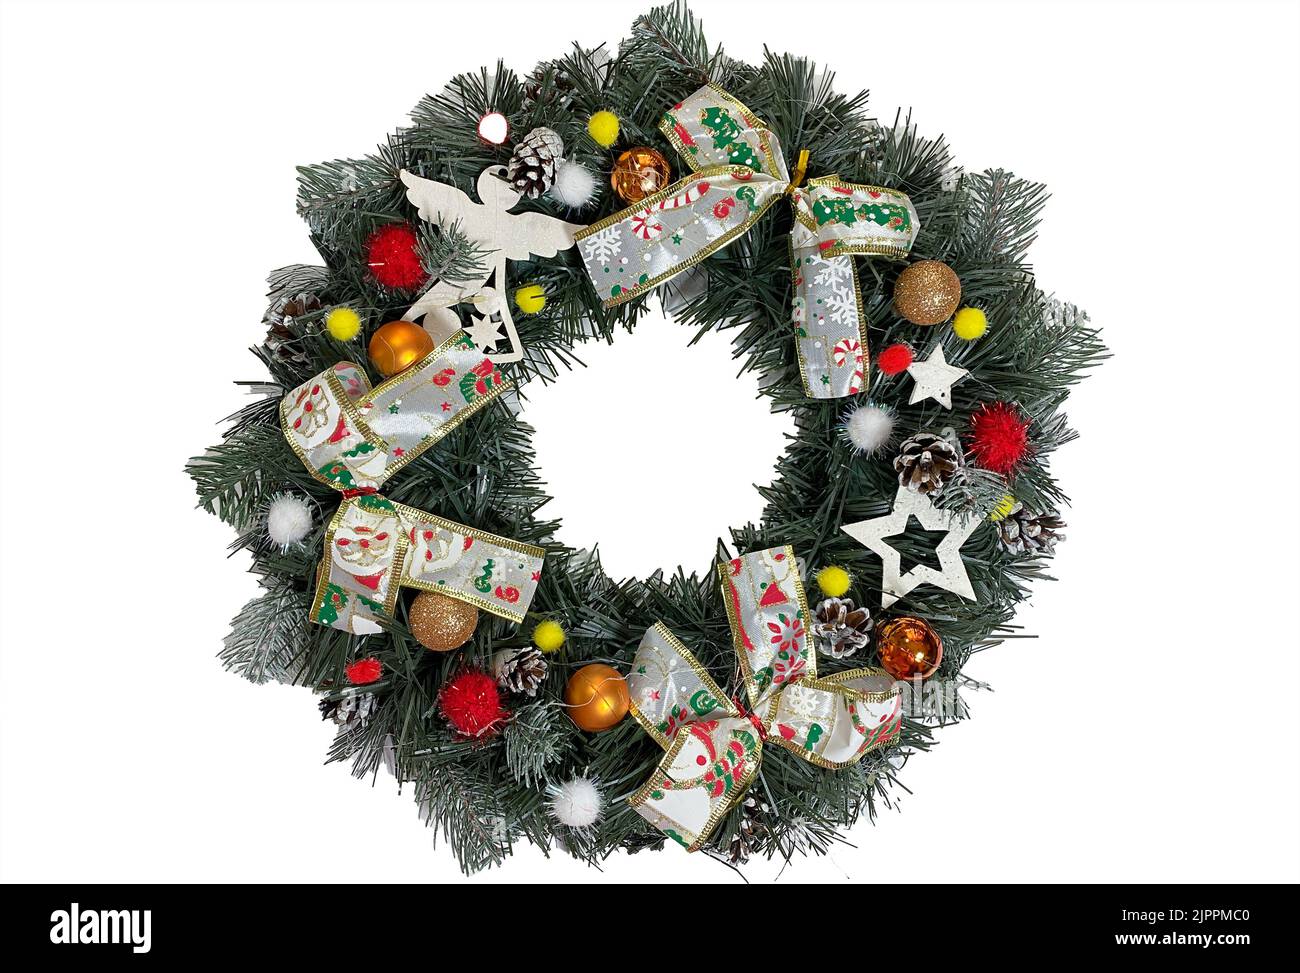 Weihnachtskranz, der die Haustür für die Feiertage aus Fichte, silbernen Bögen, Sternen und Weihnachtskugeln auf weißem Hintergrund isoliert ziert Stockfoto